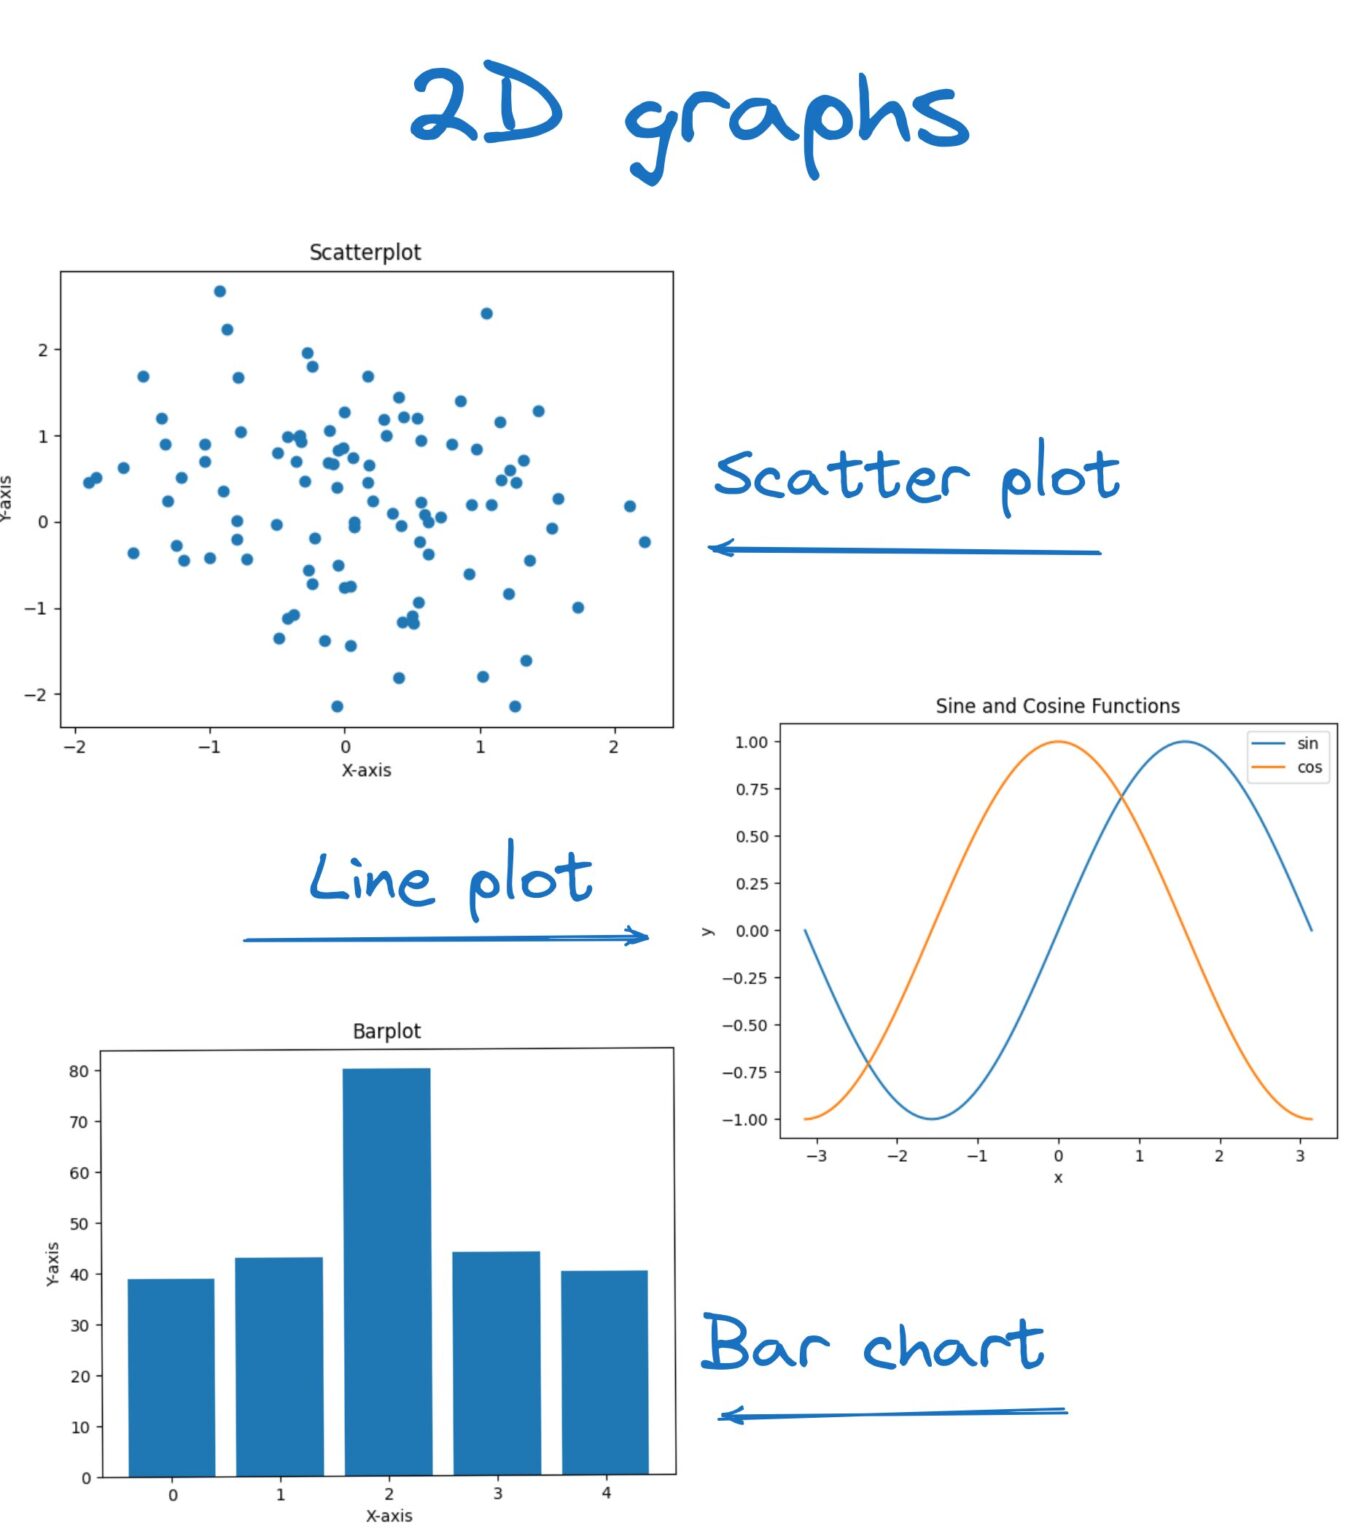 2D graphs